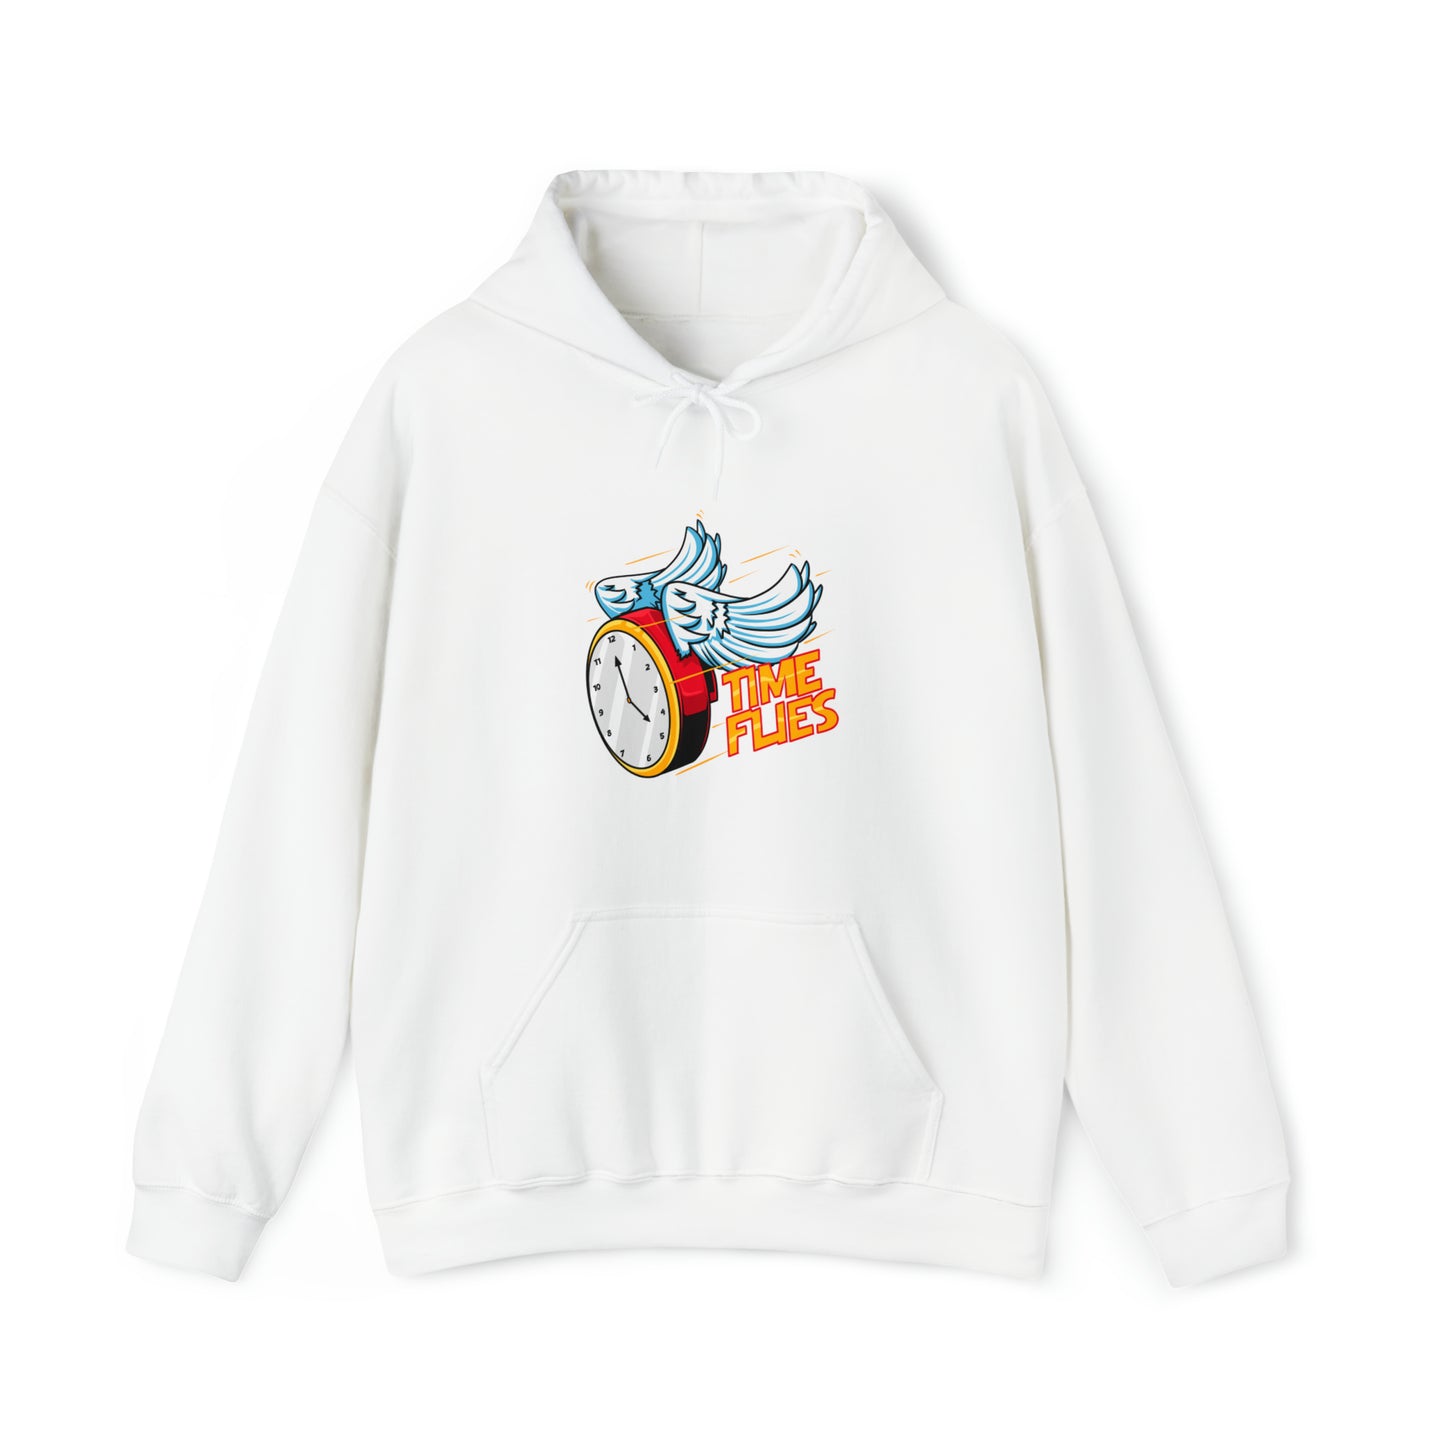 Custom Parody Hooded Sweatshirt, Time Flies design